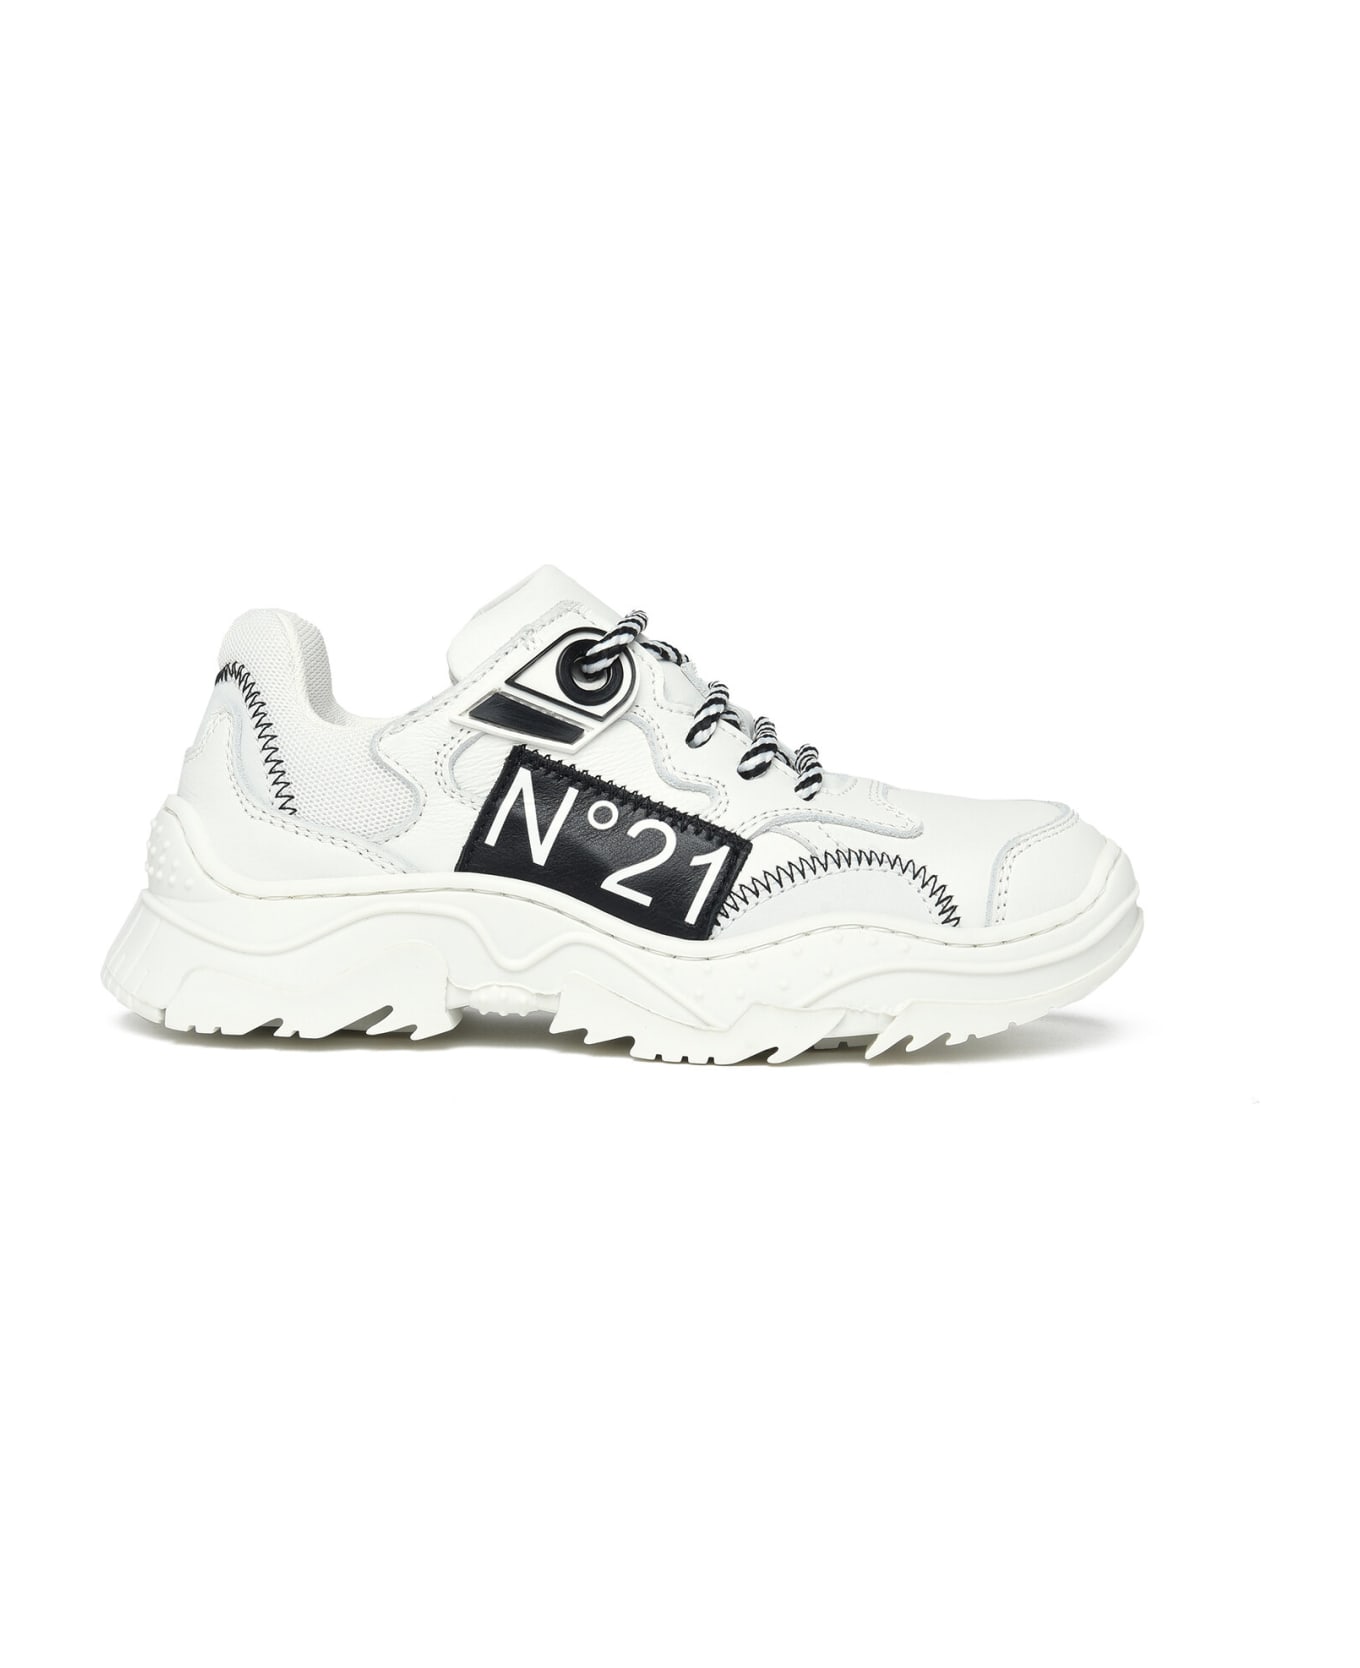 N.21 Mt69988 Var2 Sneakers N°21 Mt69988 Var.2 Sneakers - White